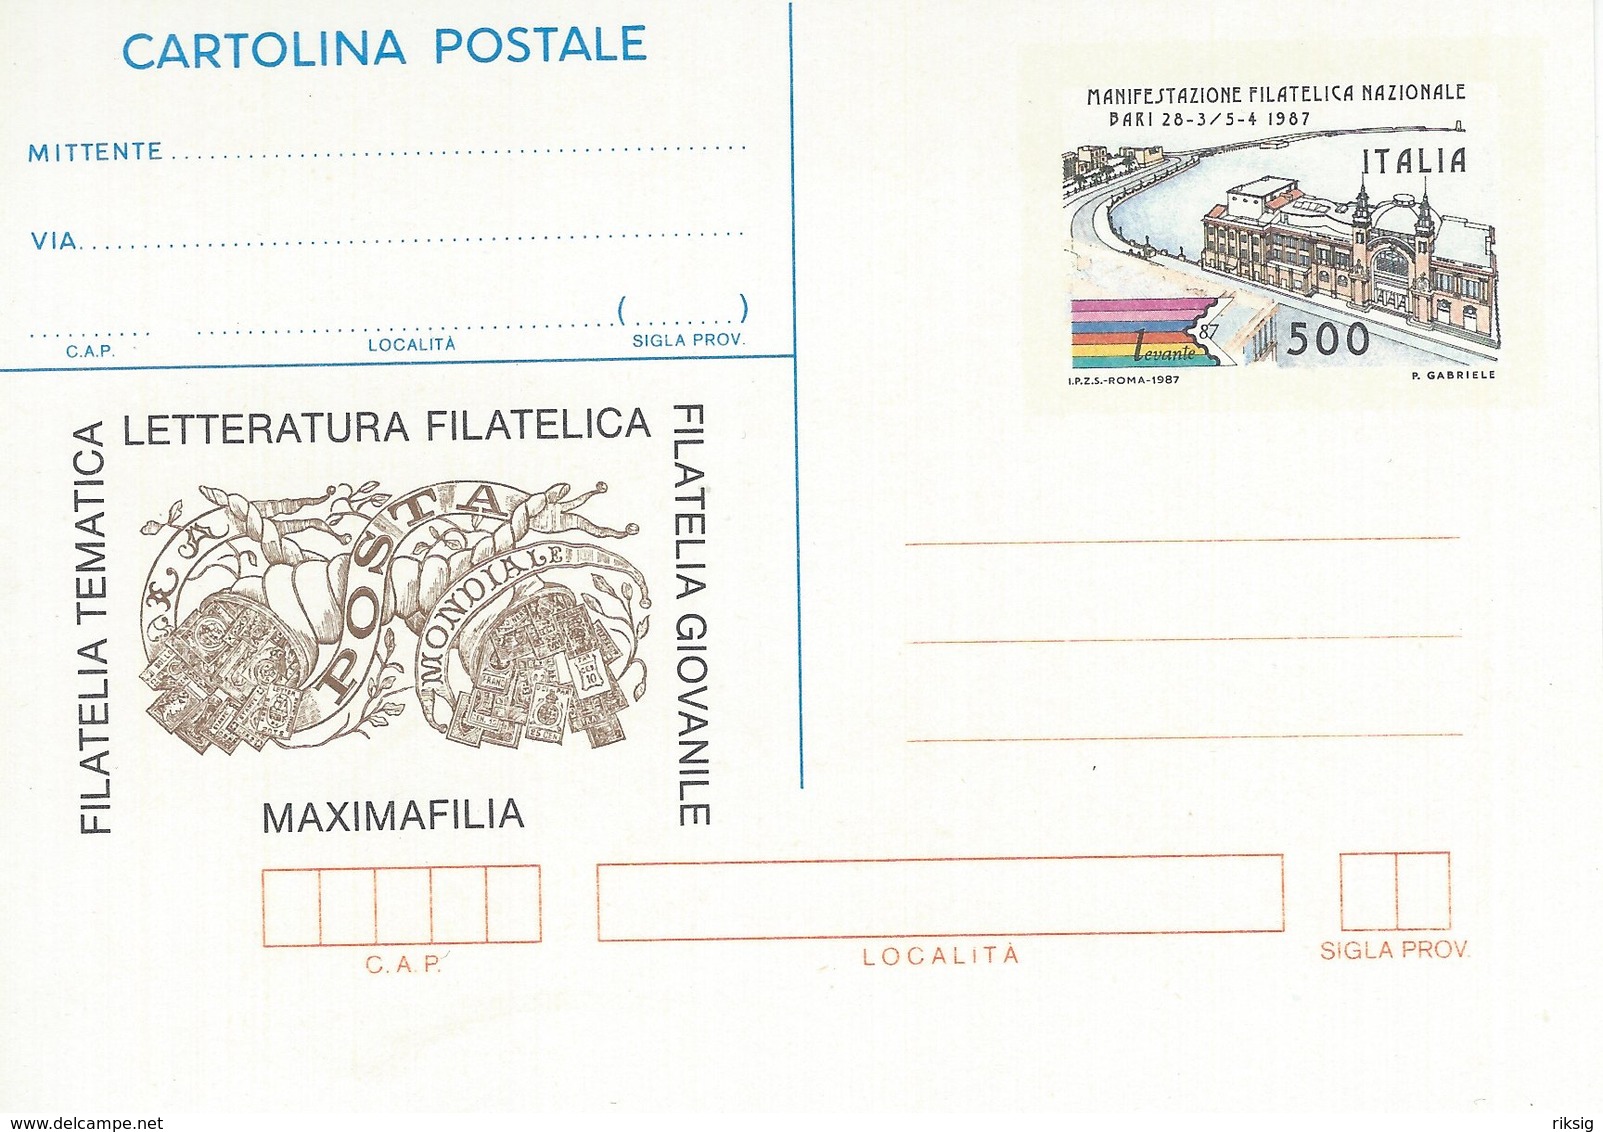 Italy - Cartolina Postale. Manifestazione Filatelica Nazionale Bari. # 07149 - Unclassified